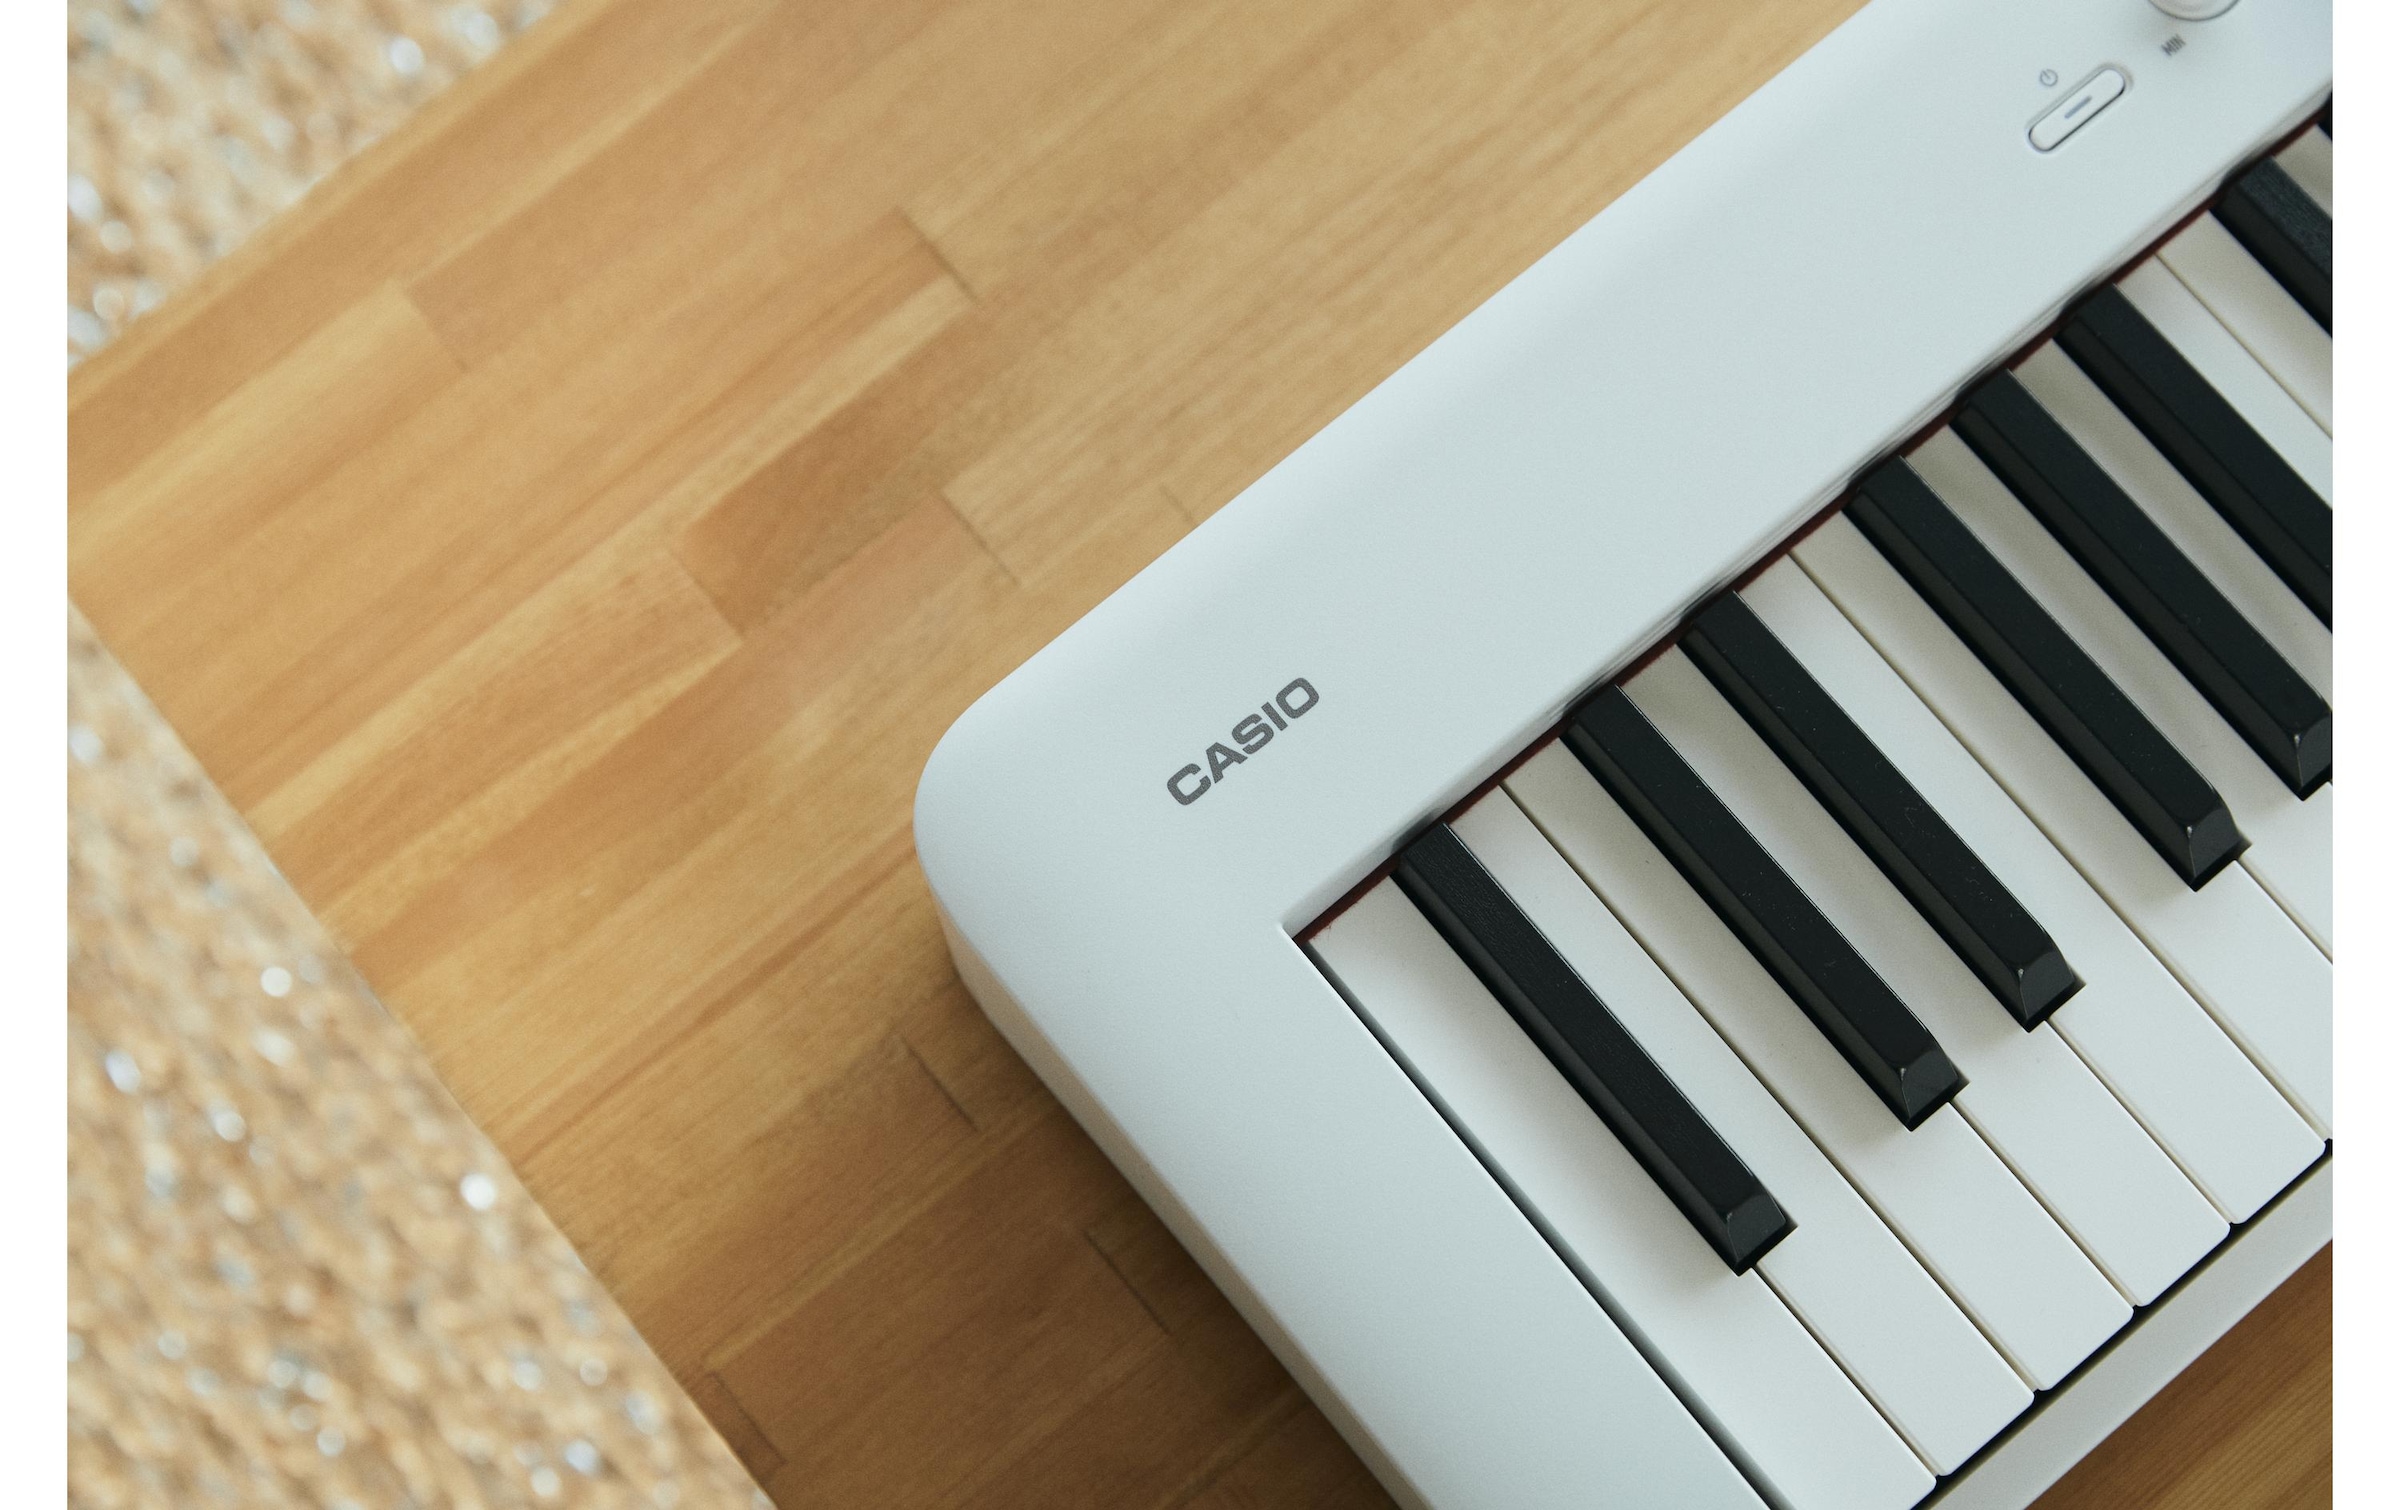 CASIO E-Piano »CDP-S110WE«